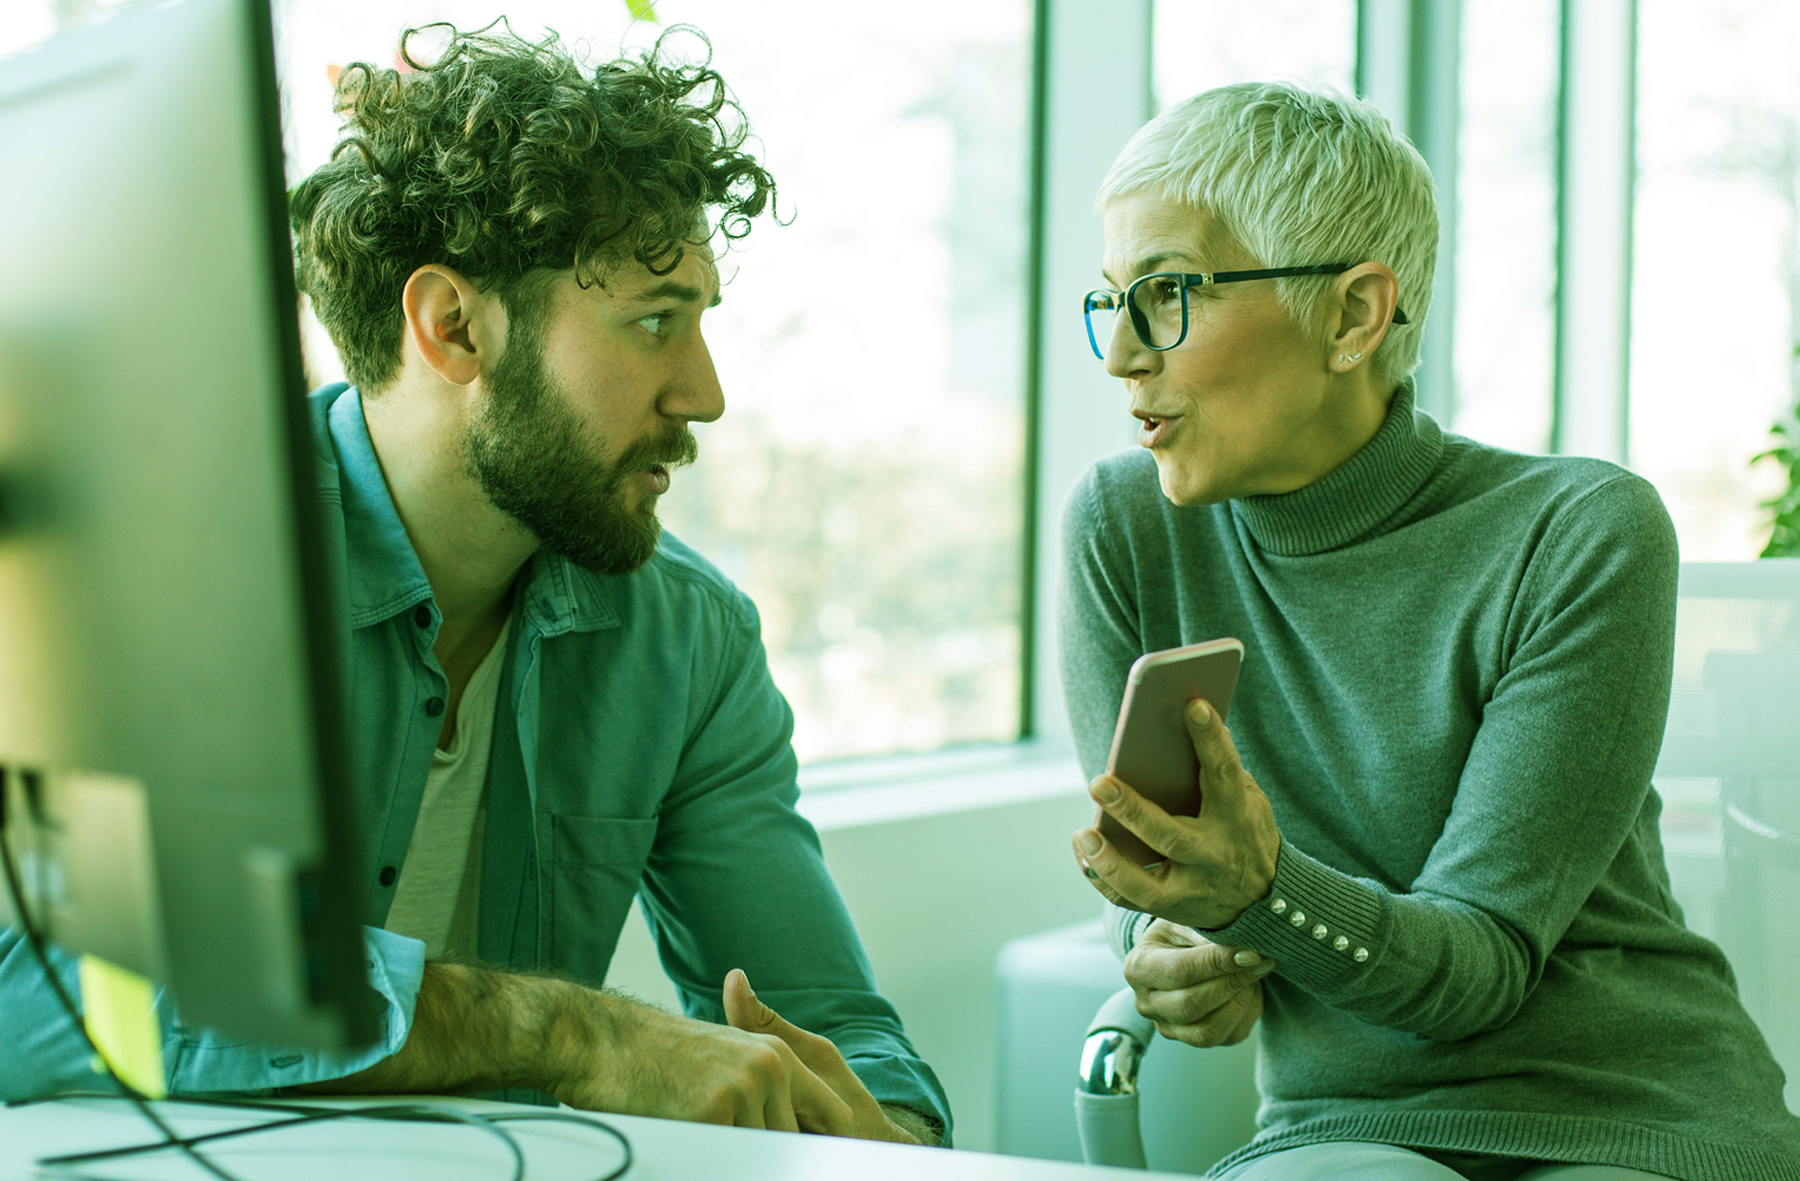 homem ruivo de cabelo enrolado e camisa verde conversando com uma mulher com smartphone na mão, de cabelo curto, branco e blusa verde, discutindo sobre qualidade de software